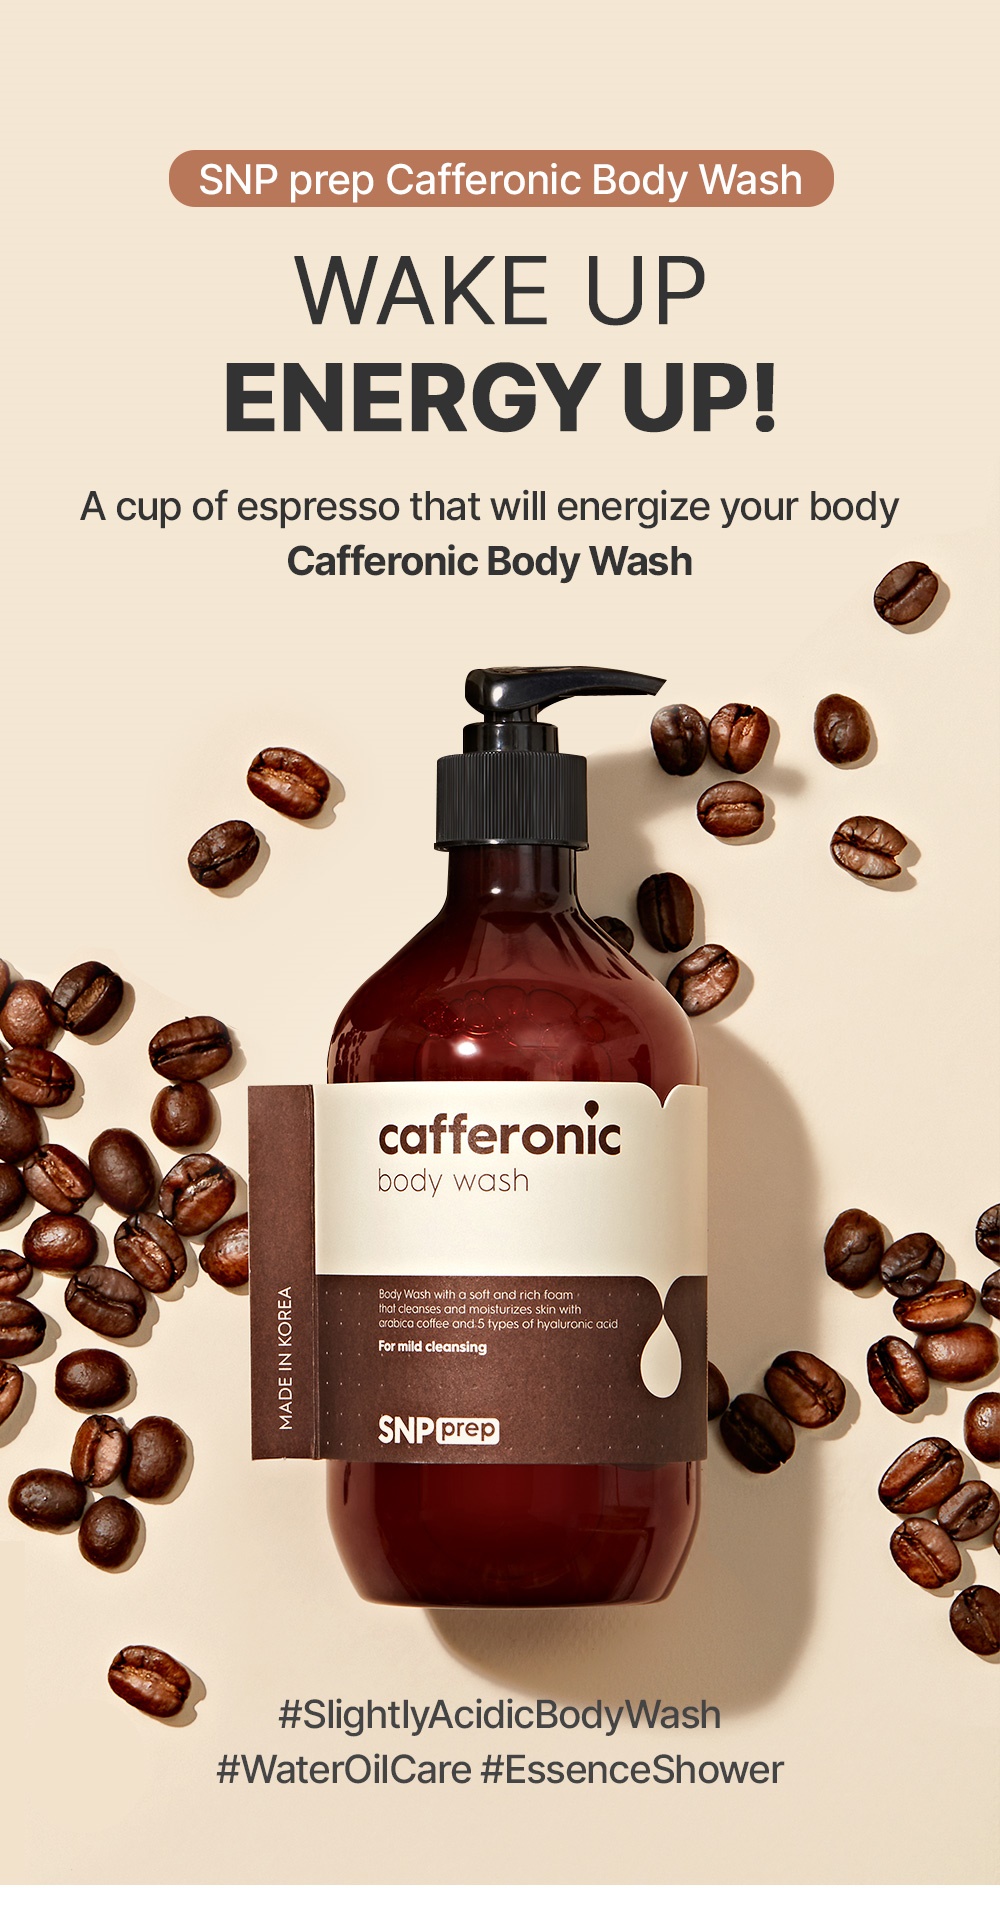 SNP PREP Cafferonic Body Wash 500ml ครีมอาบน้ำสารสกัดจากเมล็ดกาแฟ ช่วยให้ผิวชุ่มชื้น ลดเลือนริ้วรอย พร้อมด้วยส่วนผสมไฮยาลูรอน 5 ชนิด